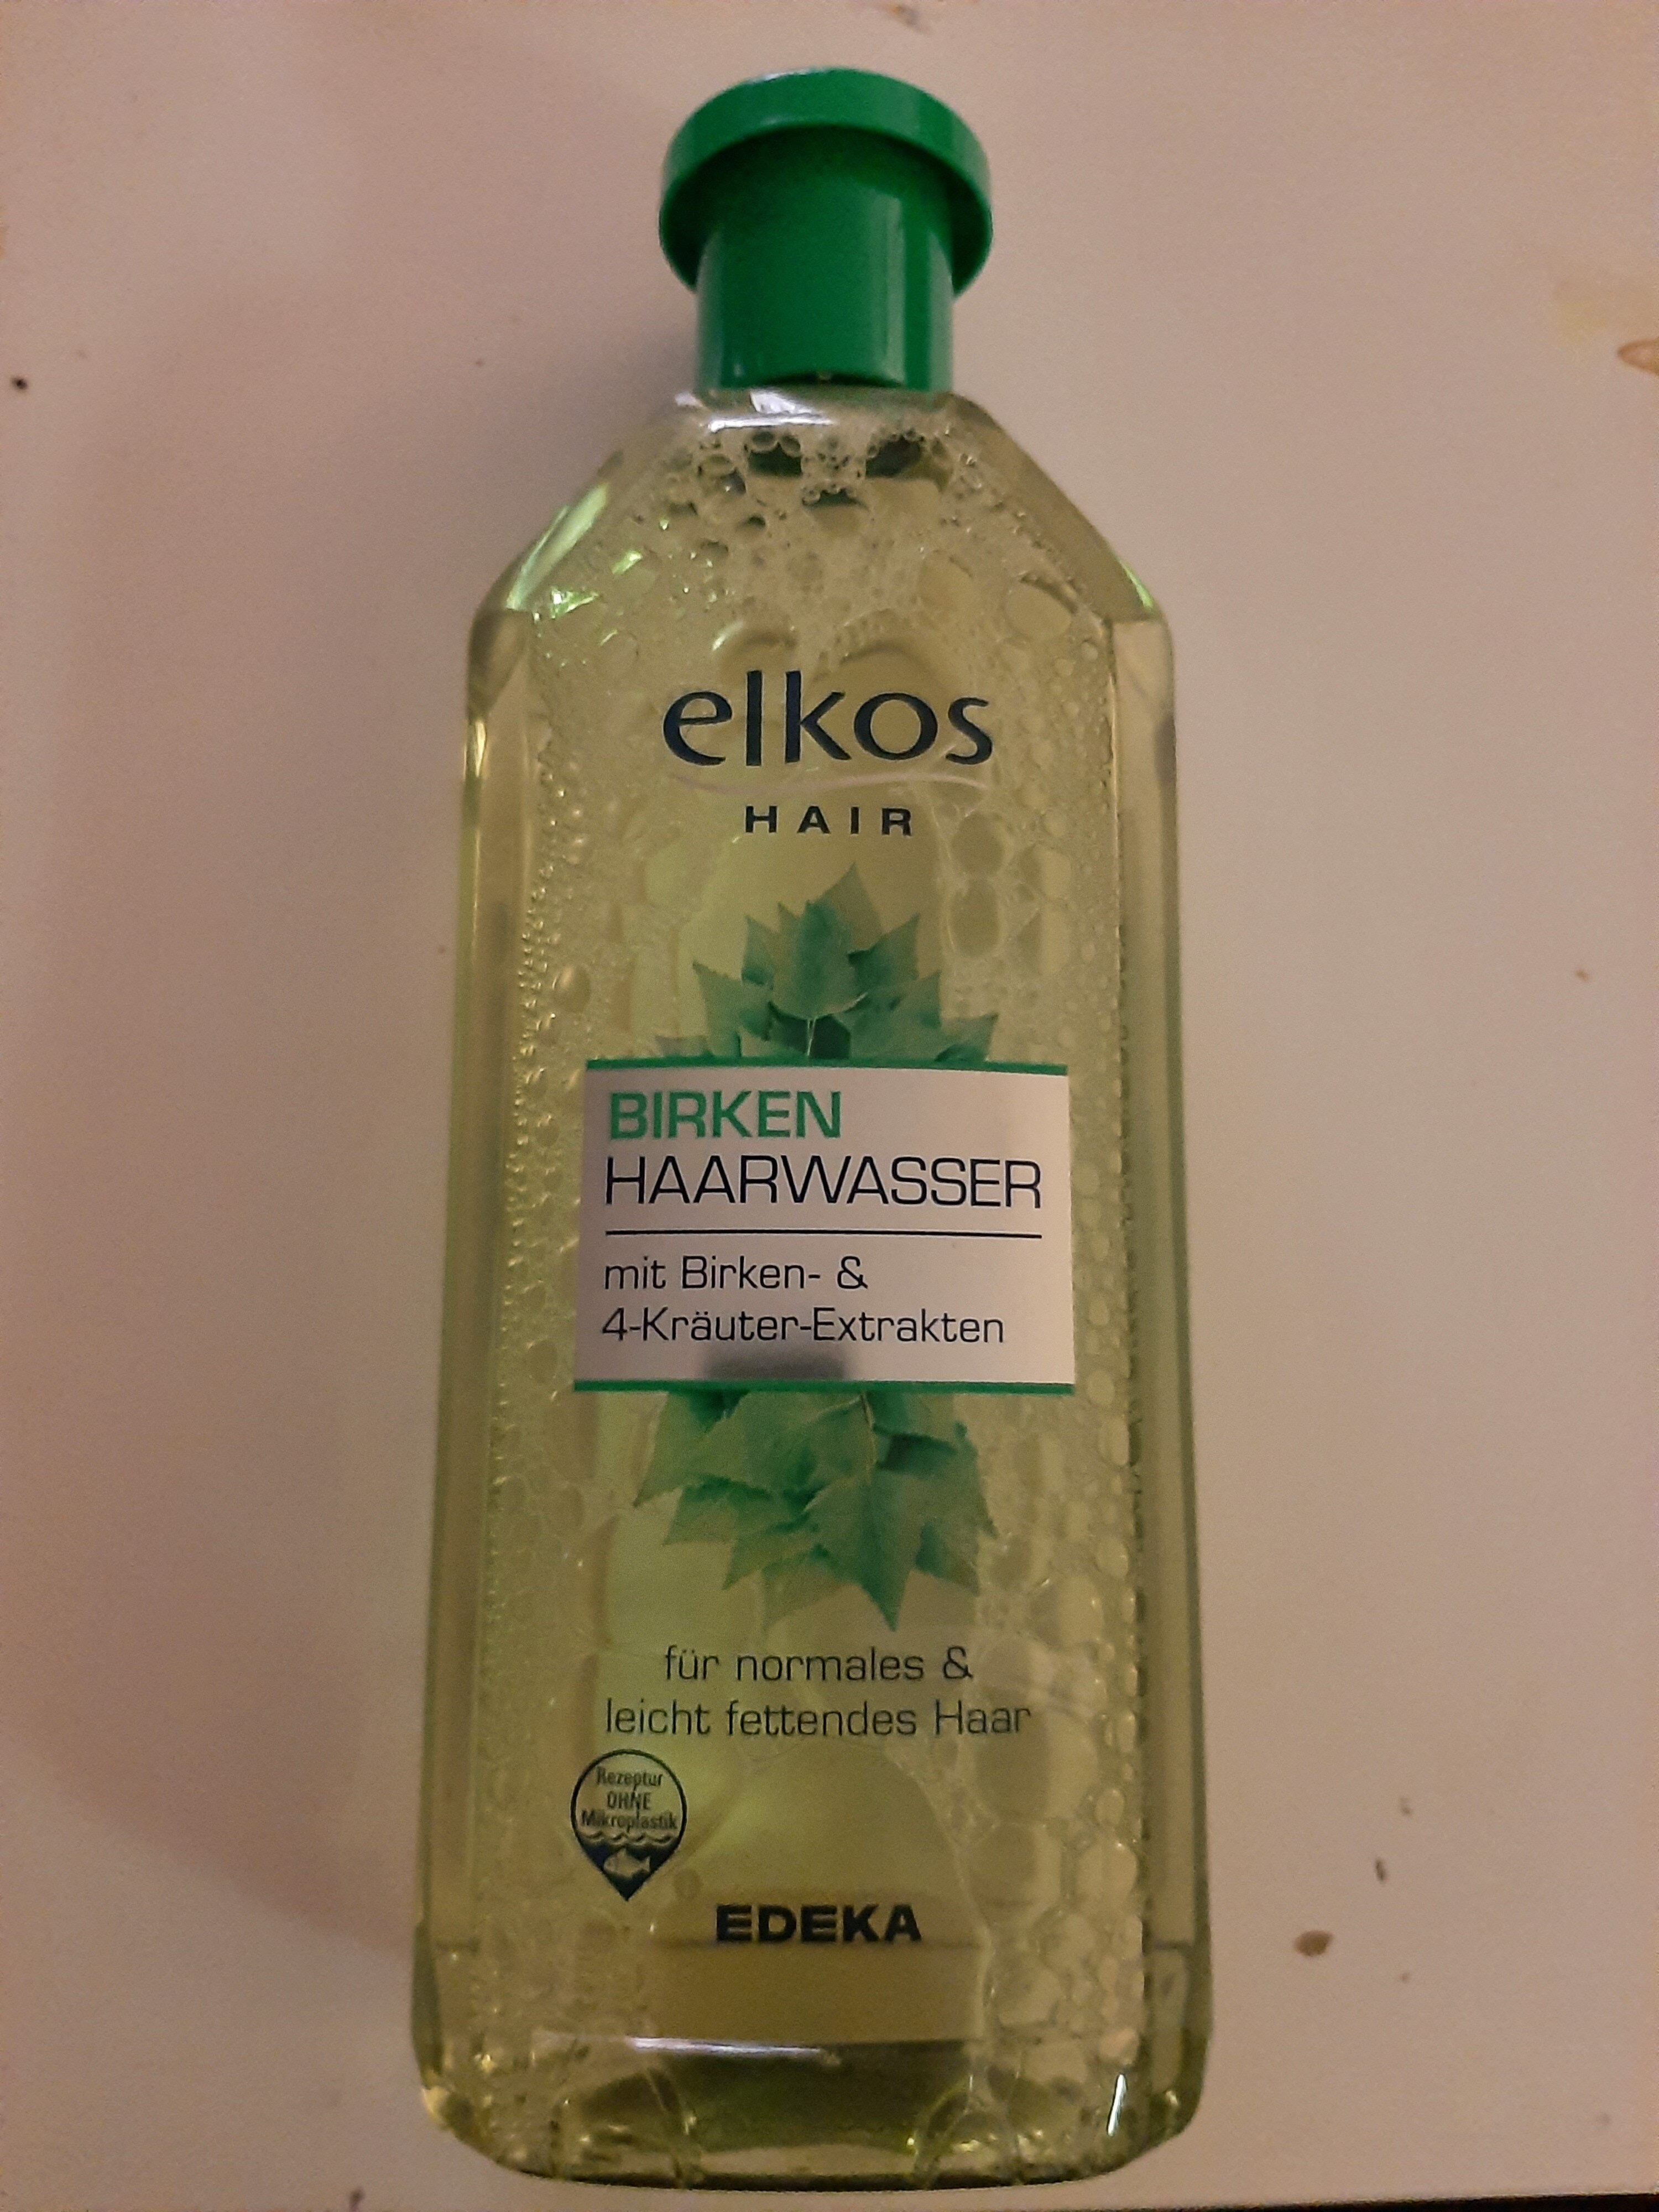 Birken Haarwasser - Product - de